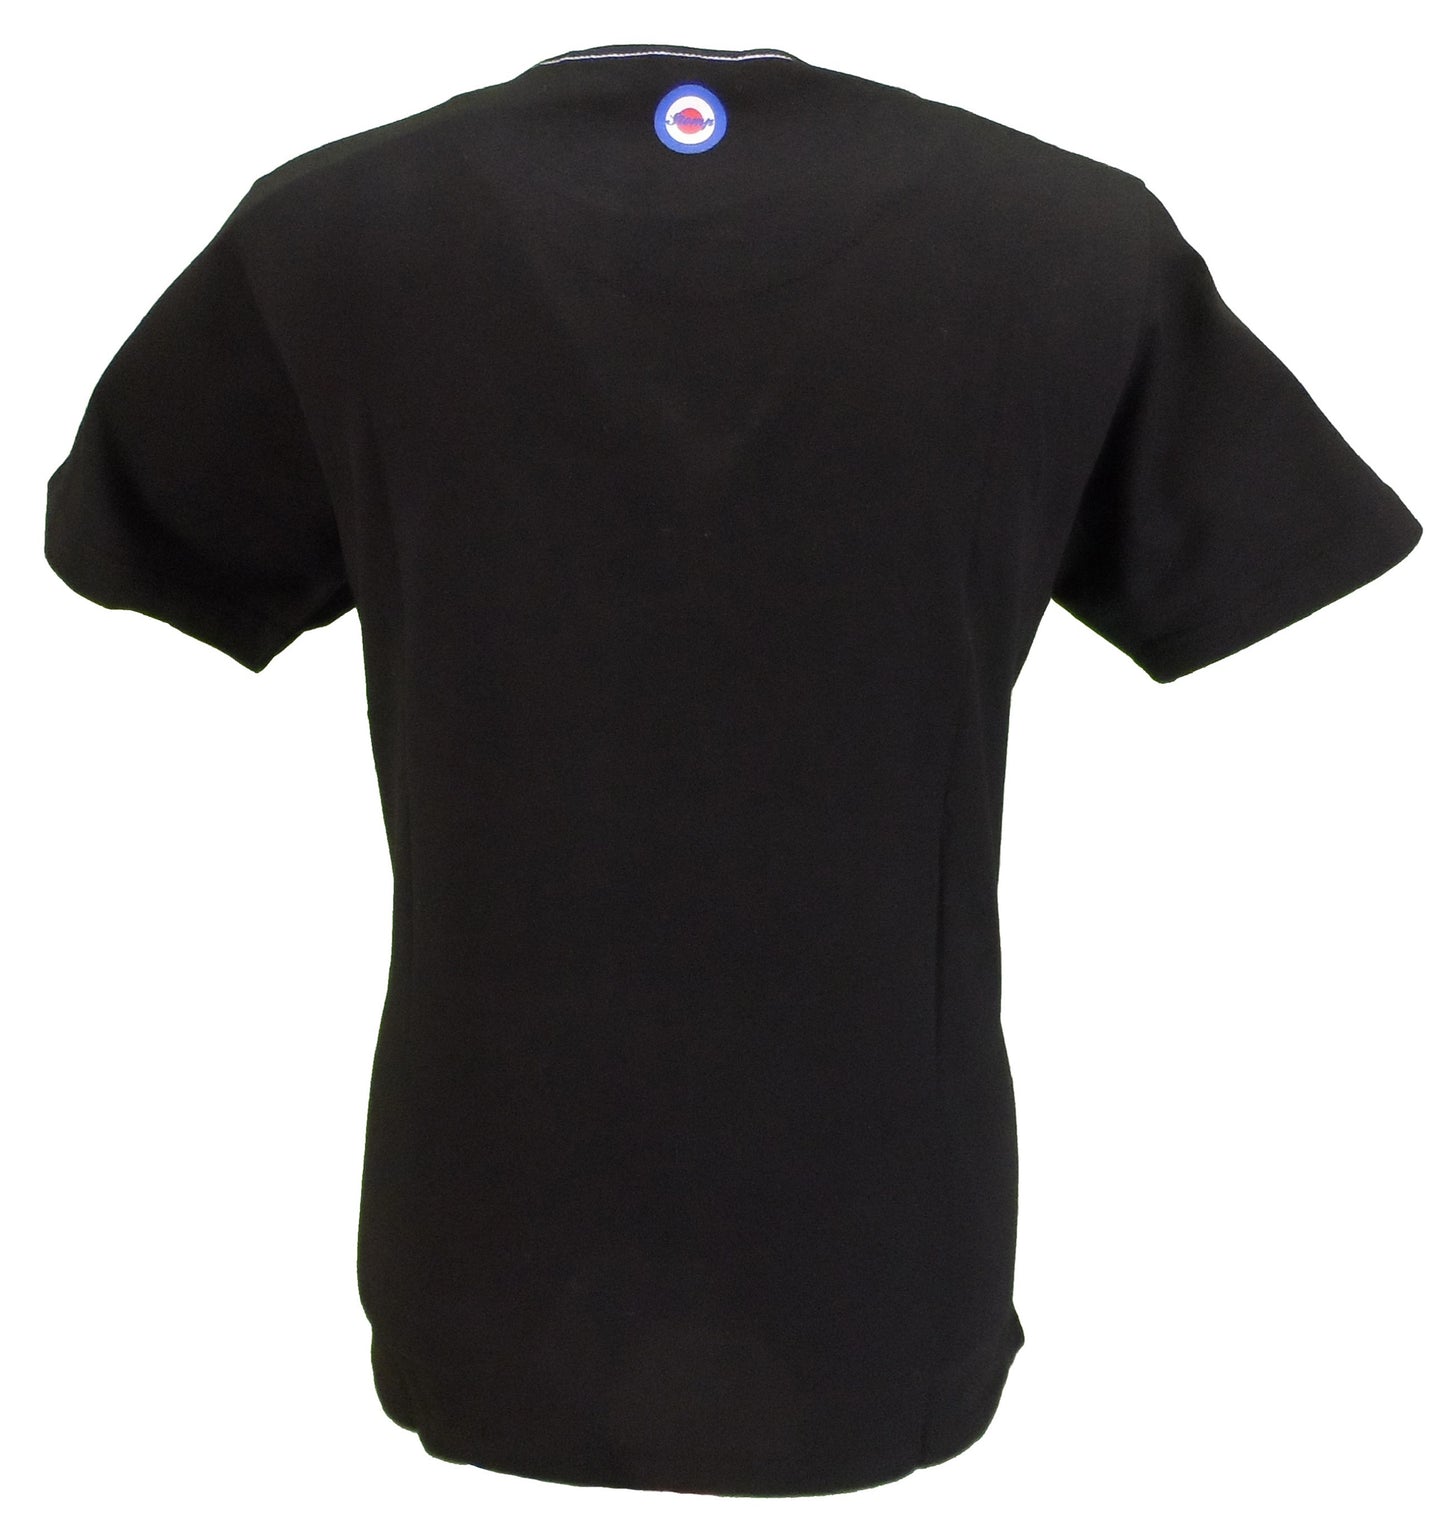 Stomp Clothing camiseta negra de laurel del alma del norte 100% algodón